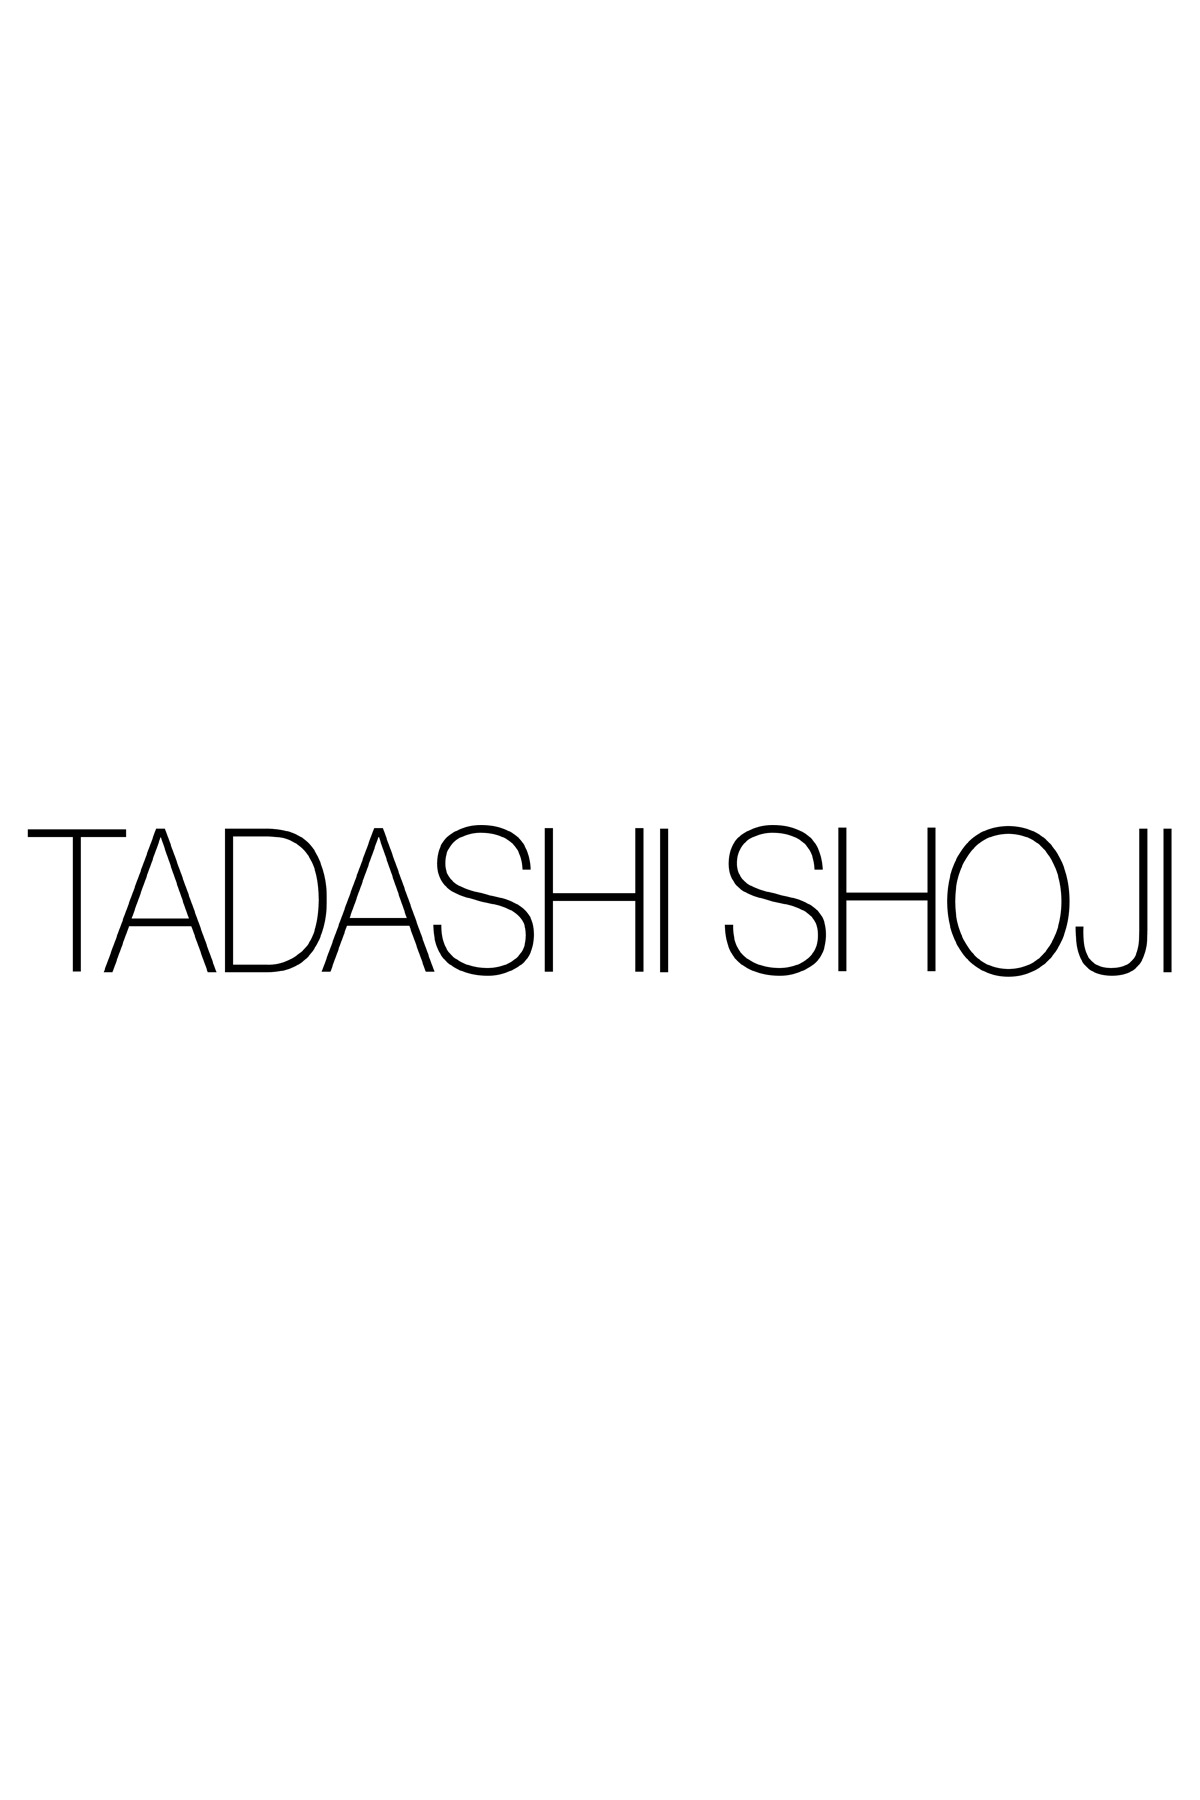 Tadashi Shoji | How to Measure